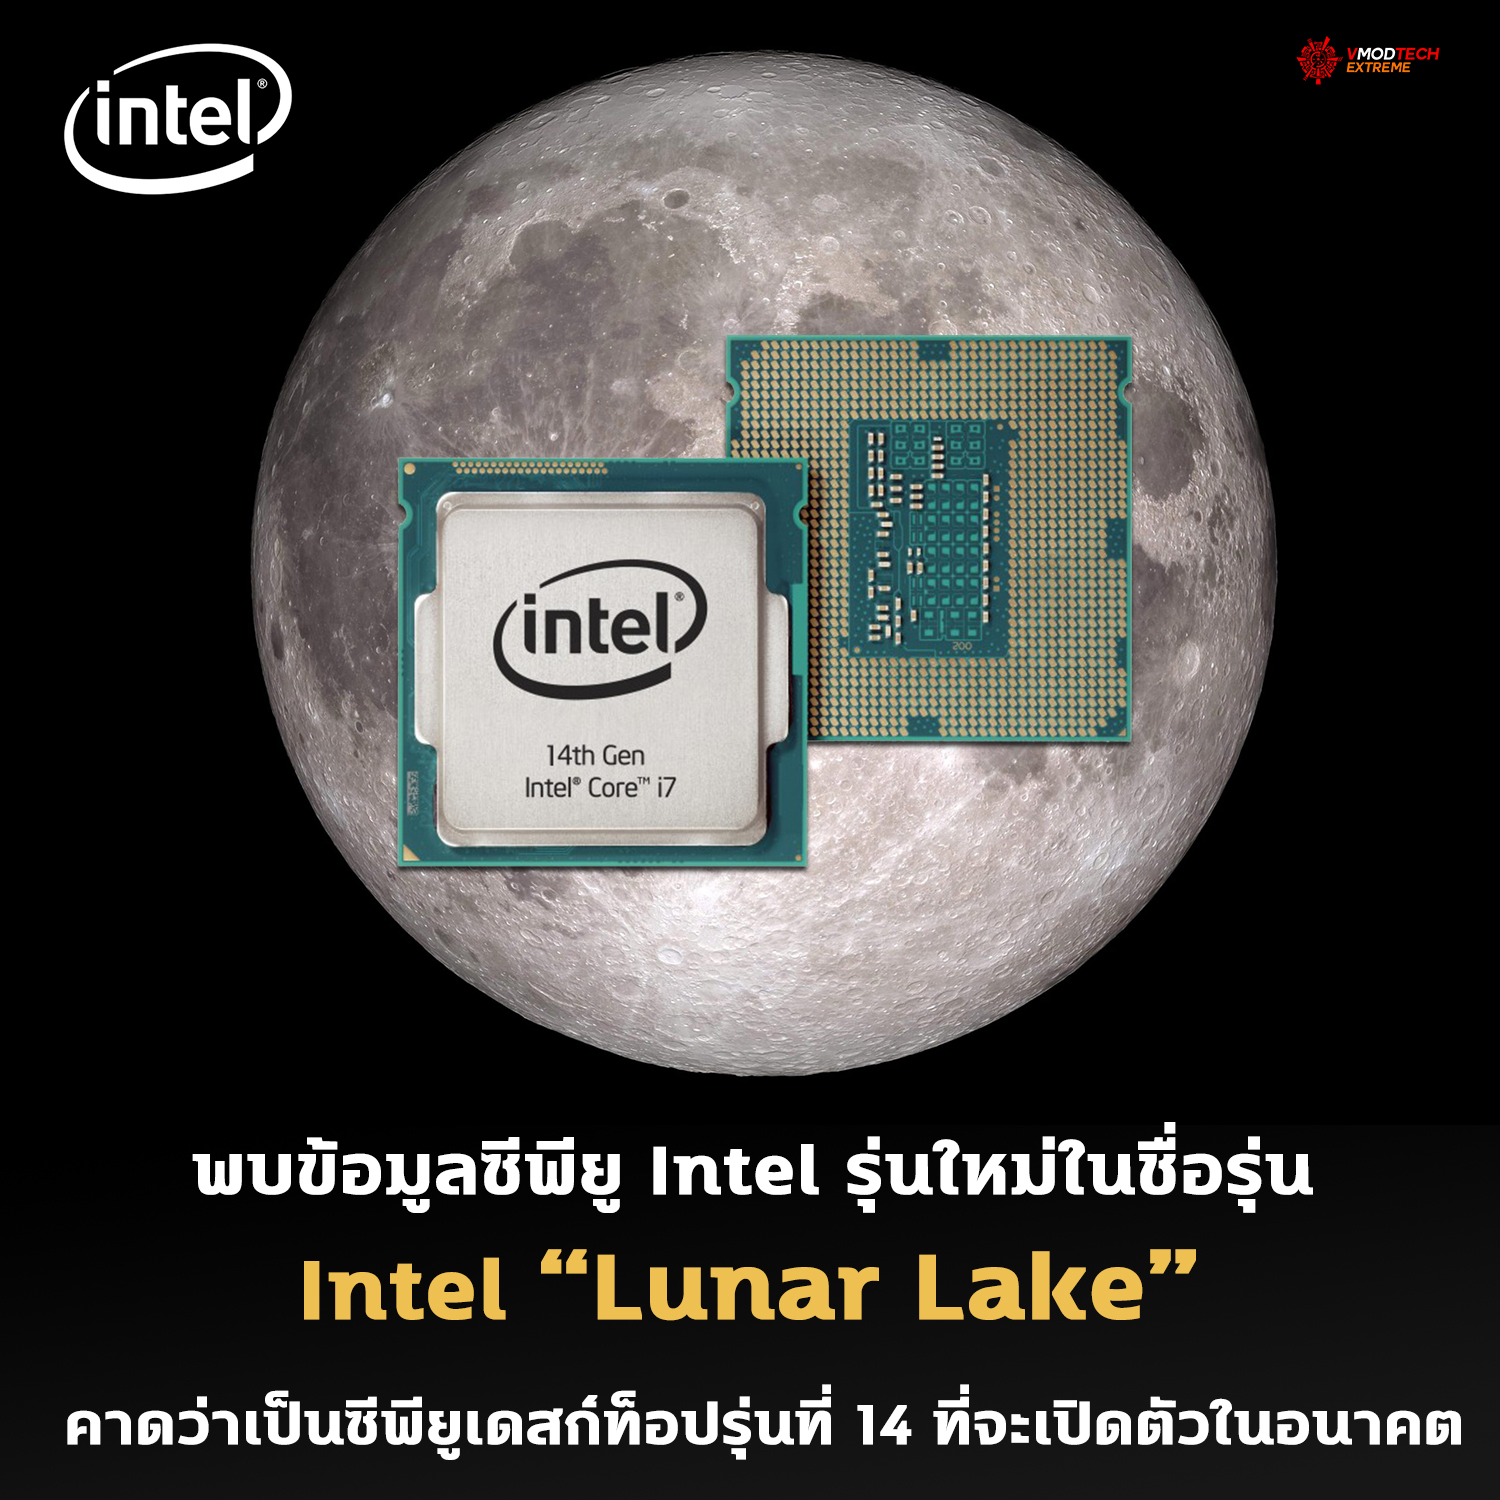 intel lunar lake พบข้อมูลซีพียู Intel รุ่นใหม่ในชื่อรุ่น Intel “Lunar Lake” คาดว่าเป็นซีพียูเดสก์ท็อปรุ่นที่ 14 ที่จะเปิดตัวในอนาคต